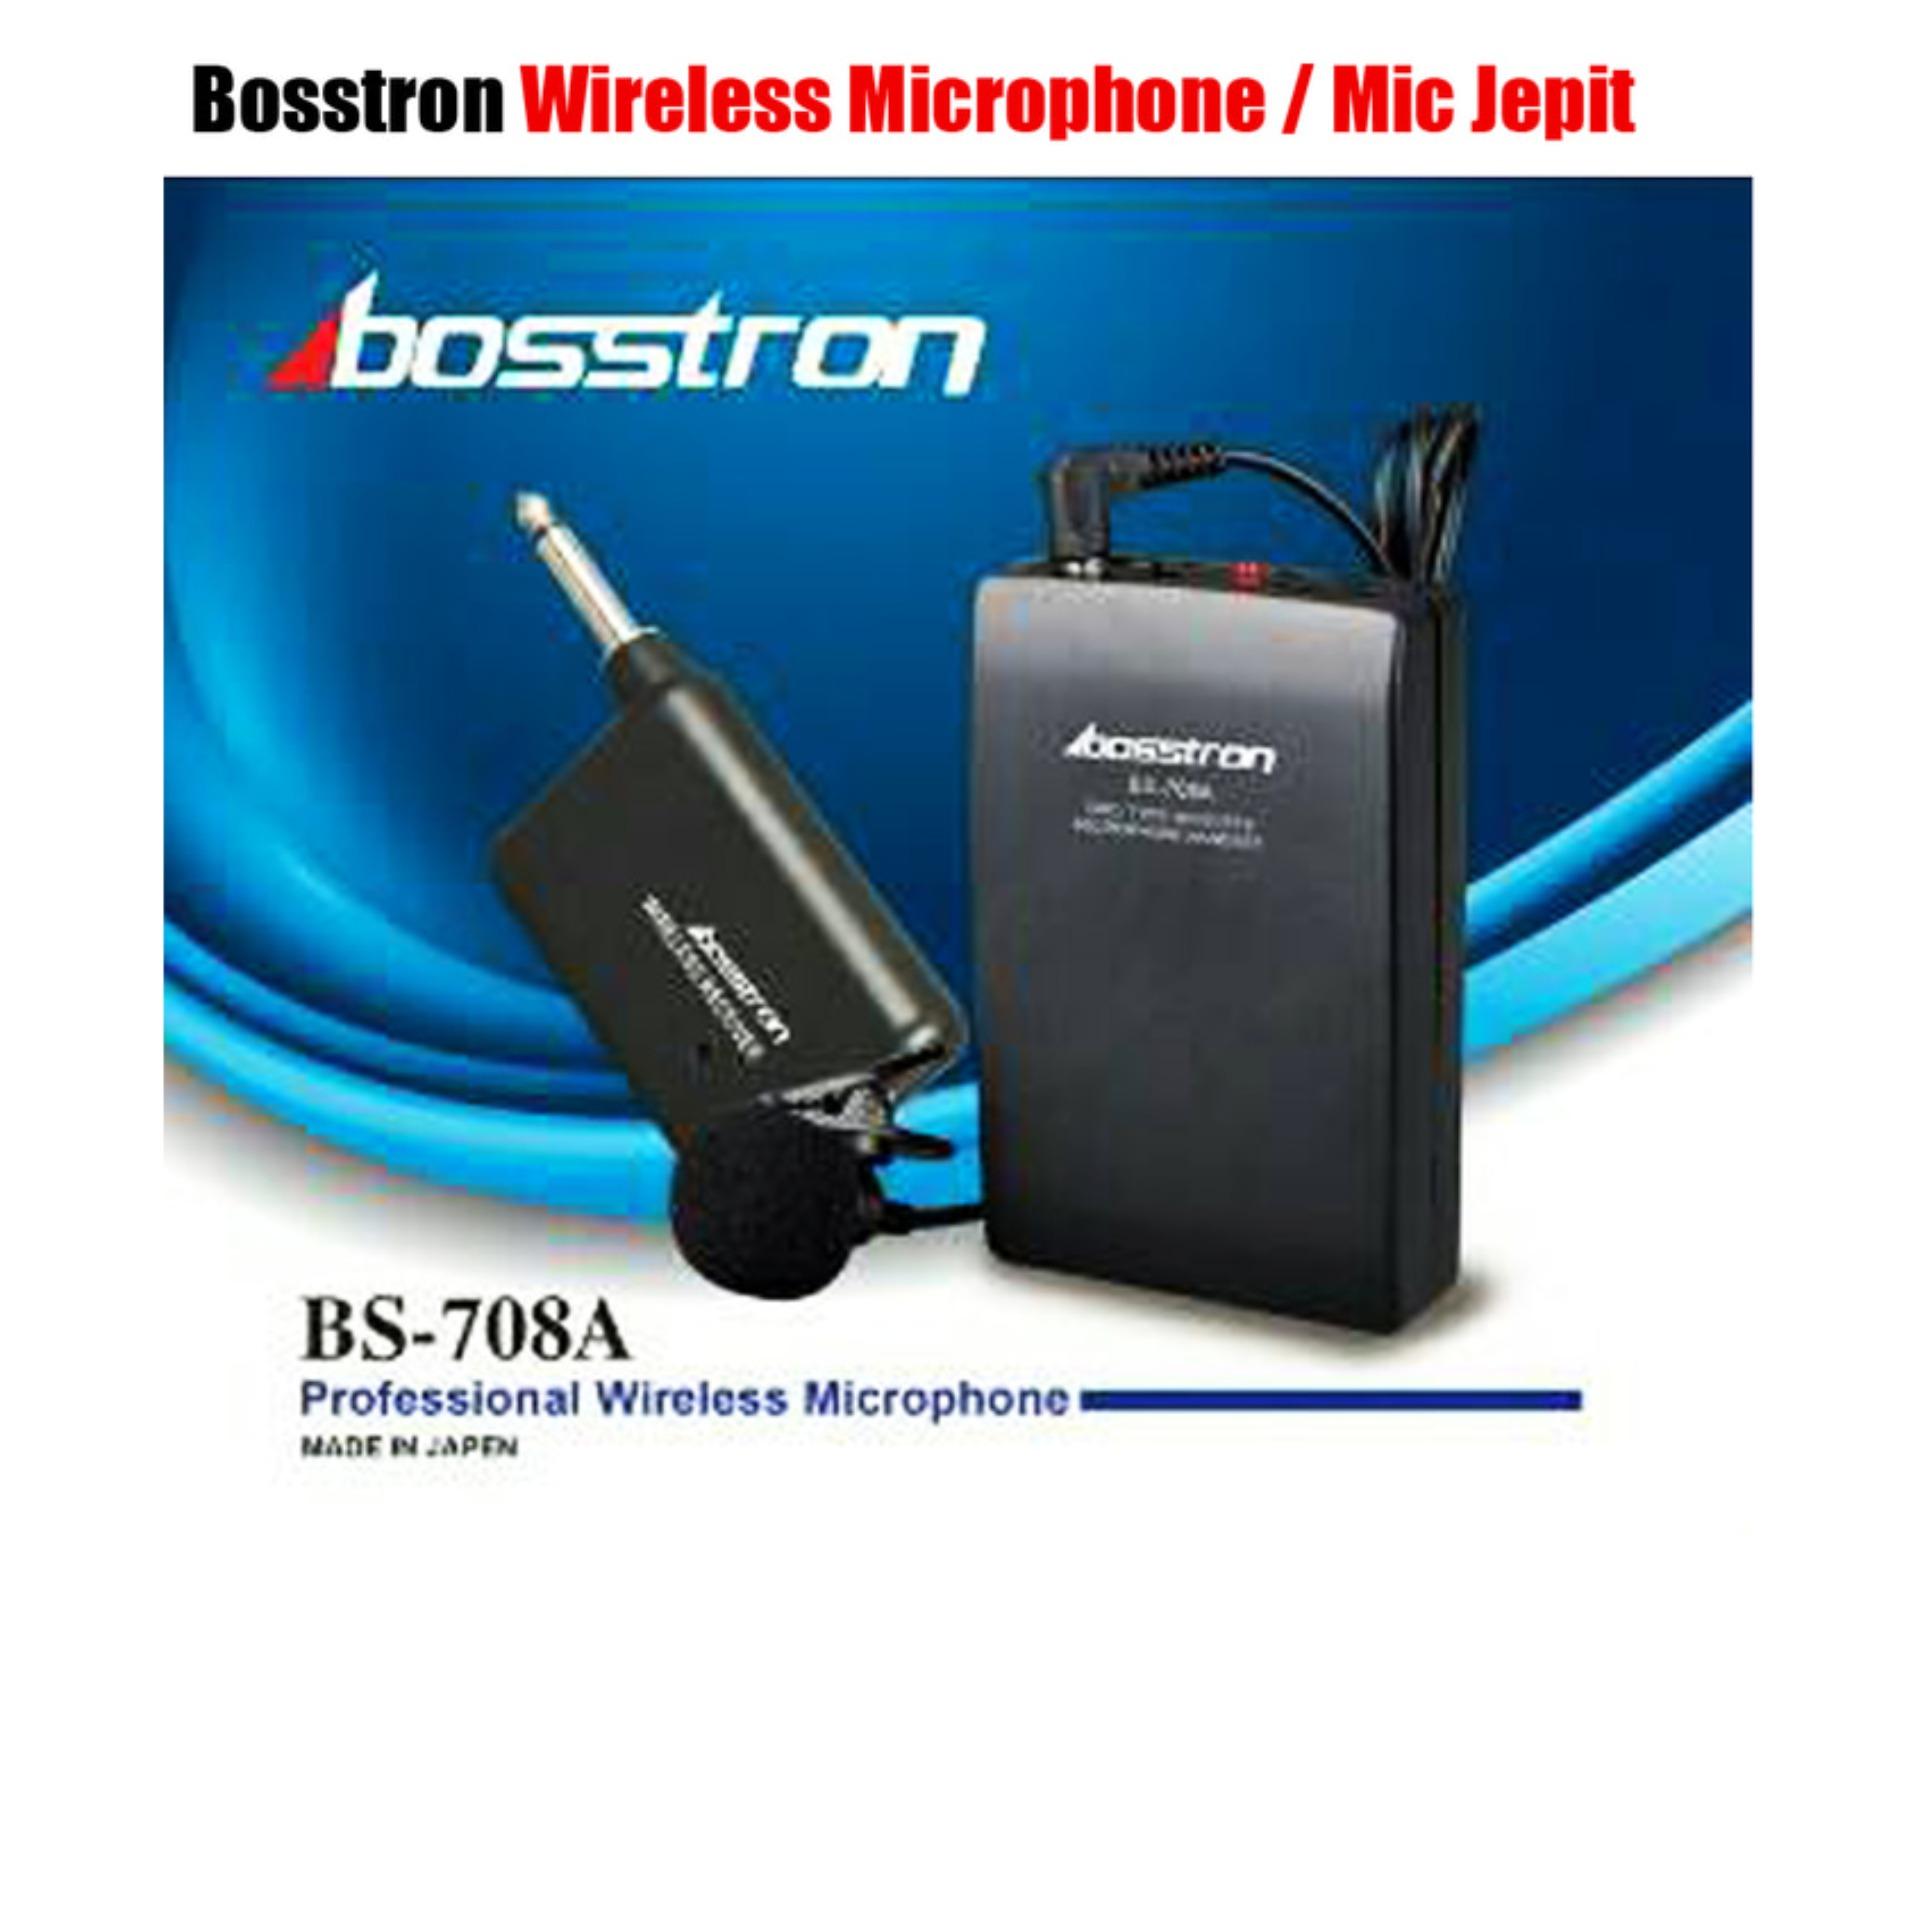 MURAH Mic Jepit Wireless Bosstron